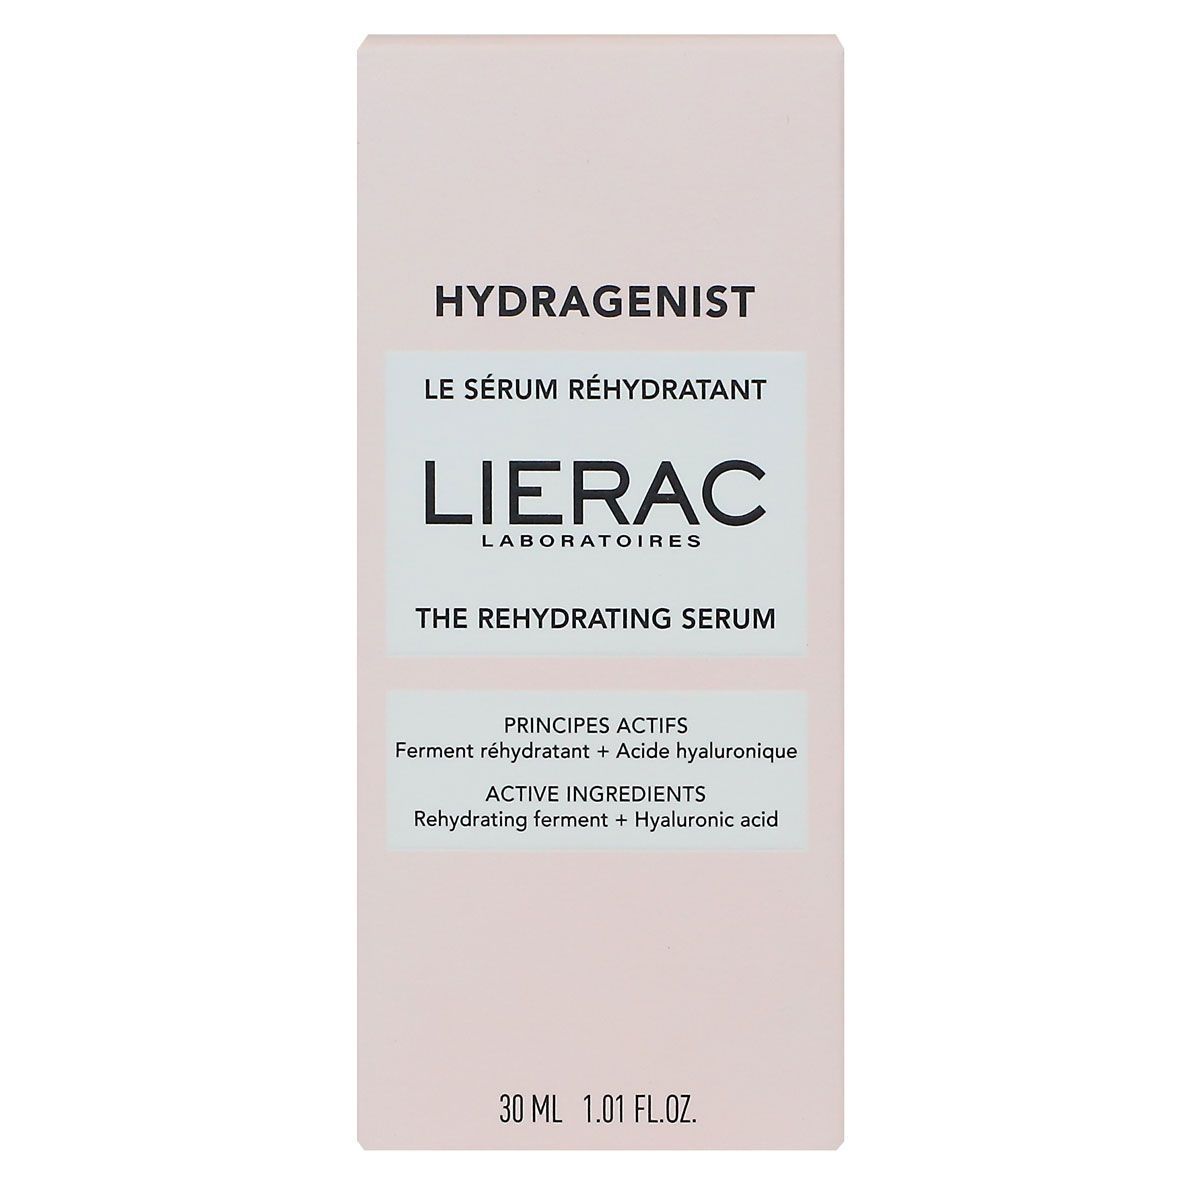 Le sérum réhydratant Hydragenist proposé par la marque Lierac